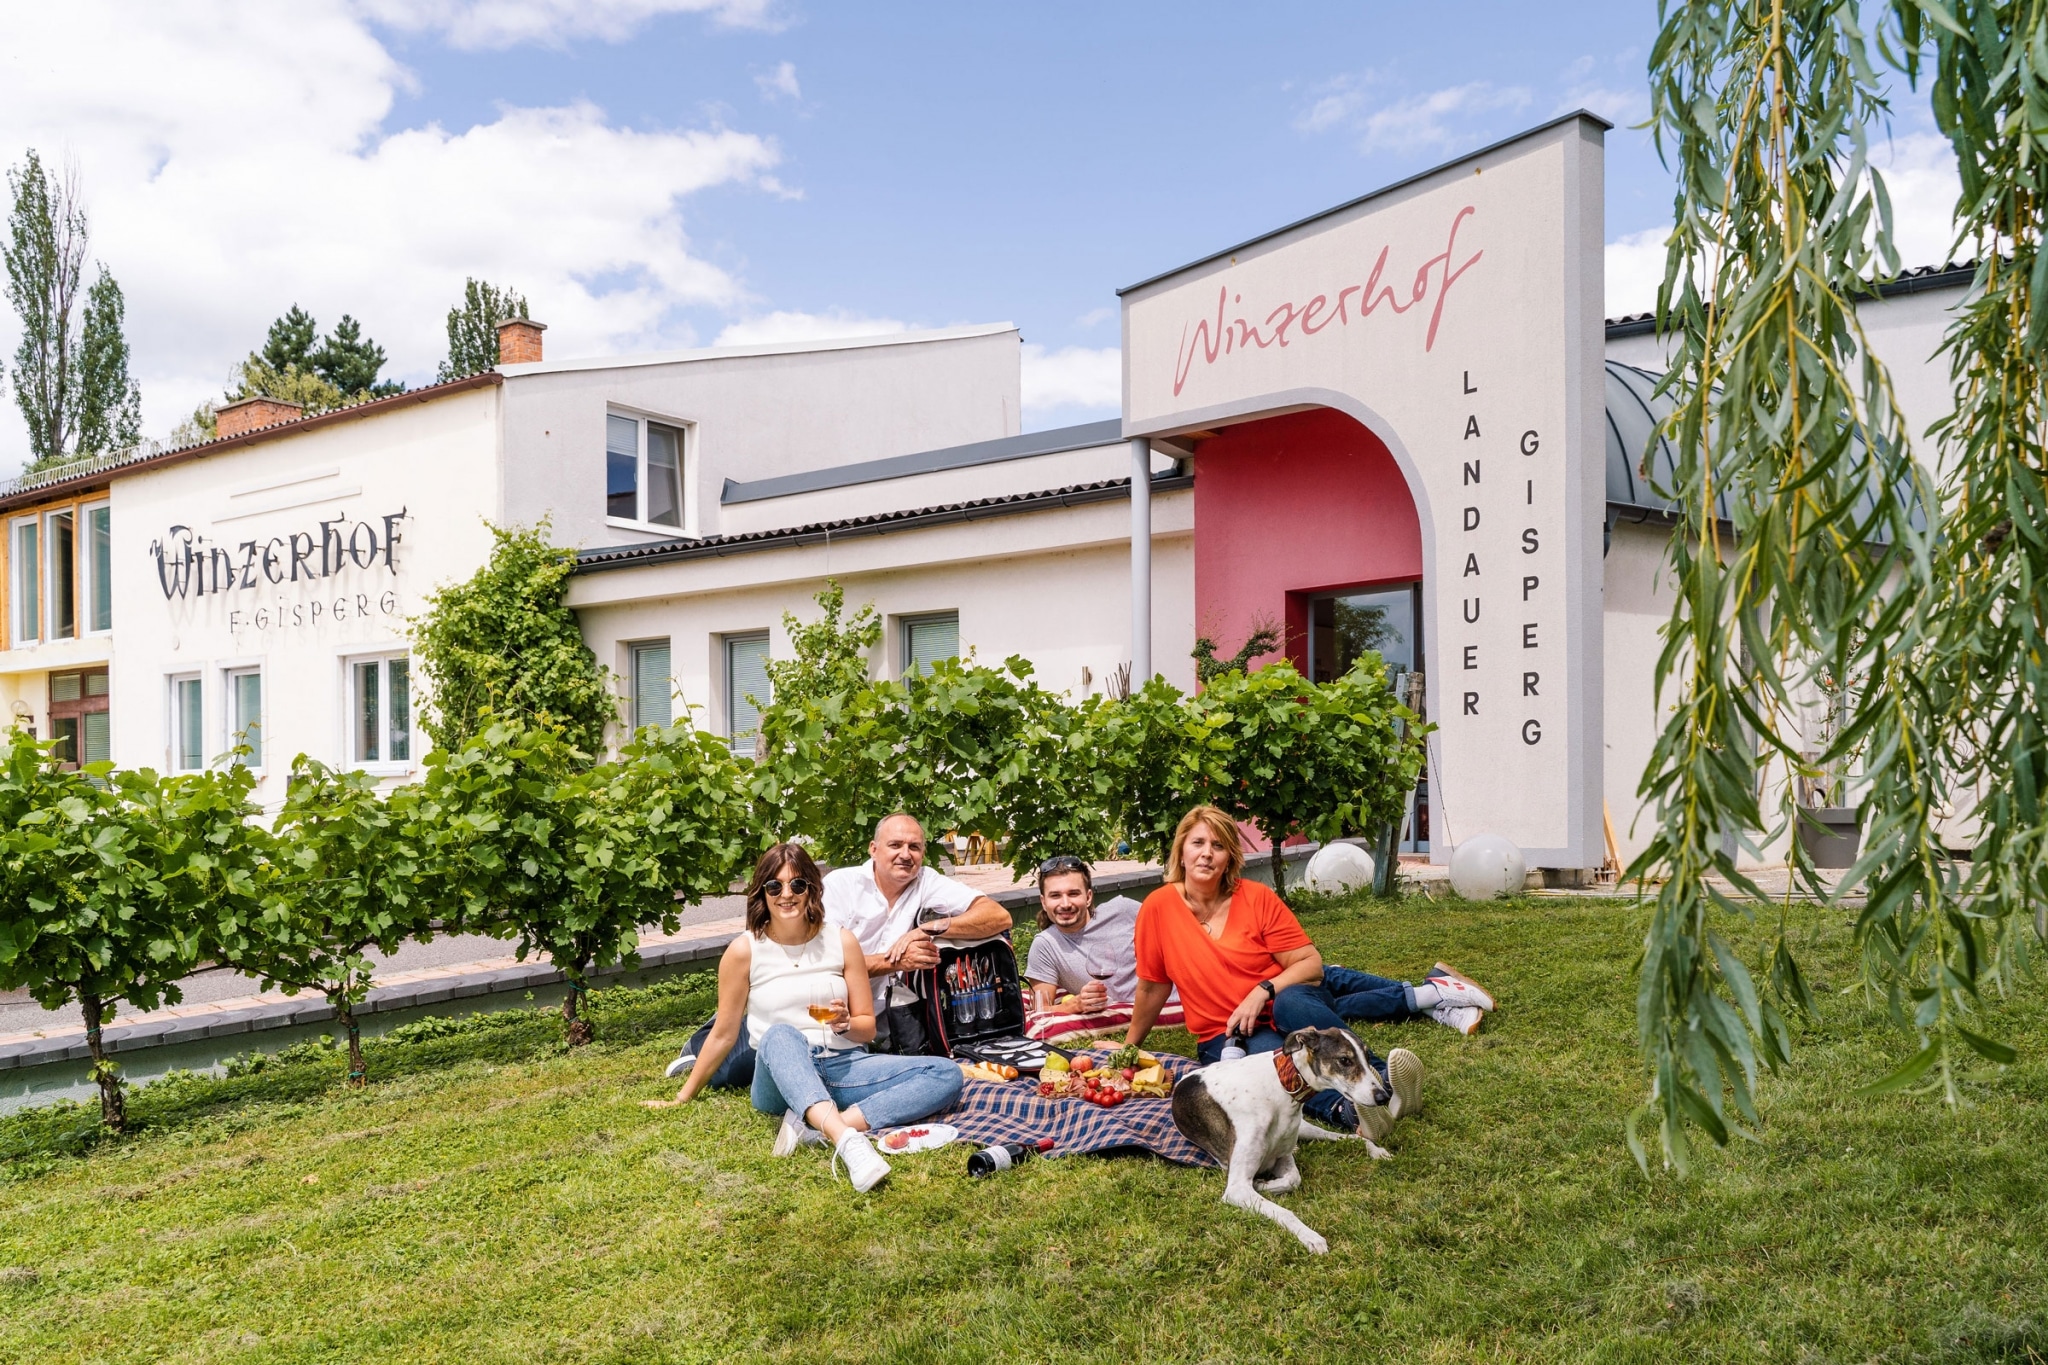 Lieferant Bio-Weingut Landauer-Gisperg Familie vor Eingang